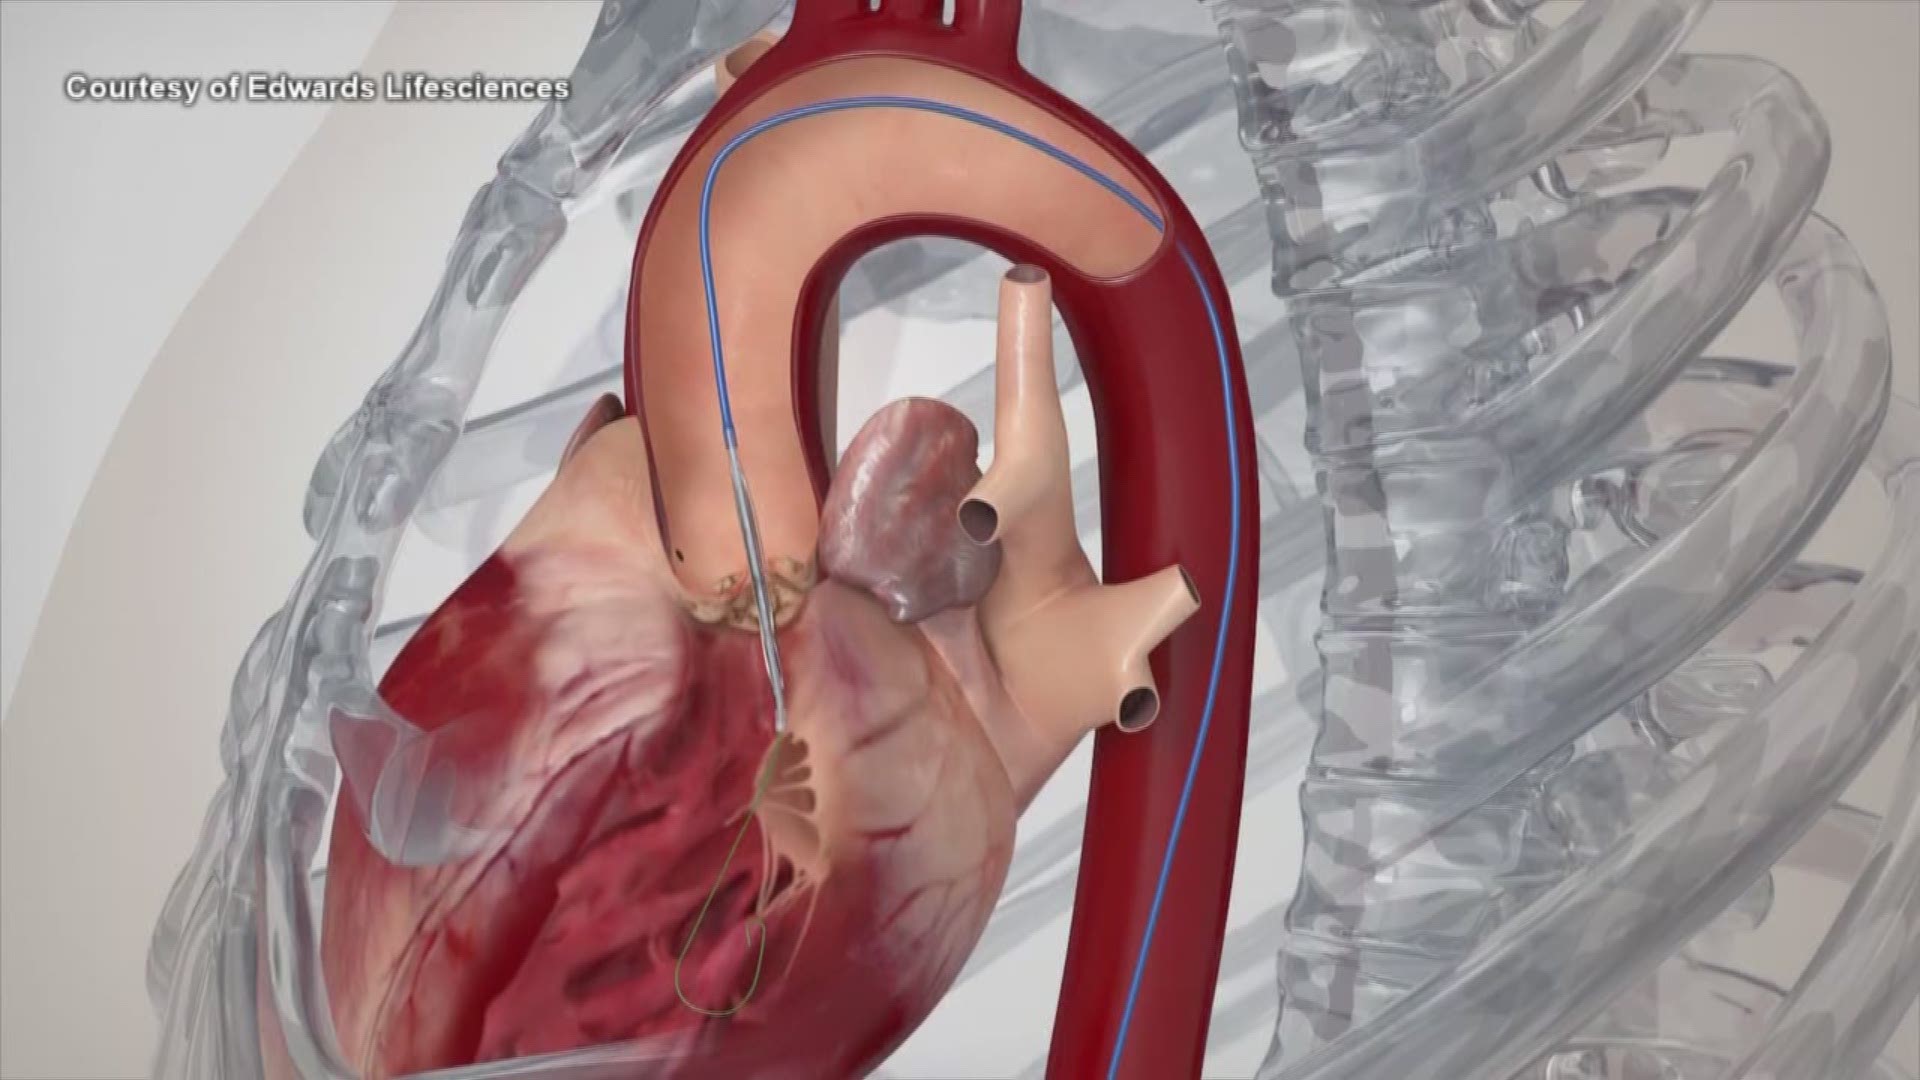 Noninvasive heart valve replacement procedure under UW